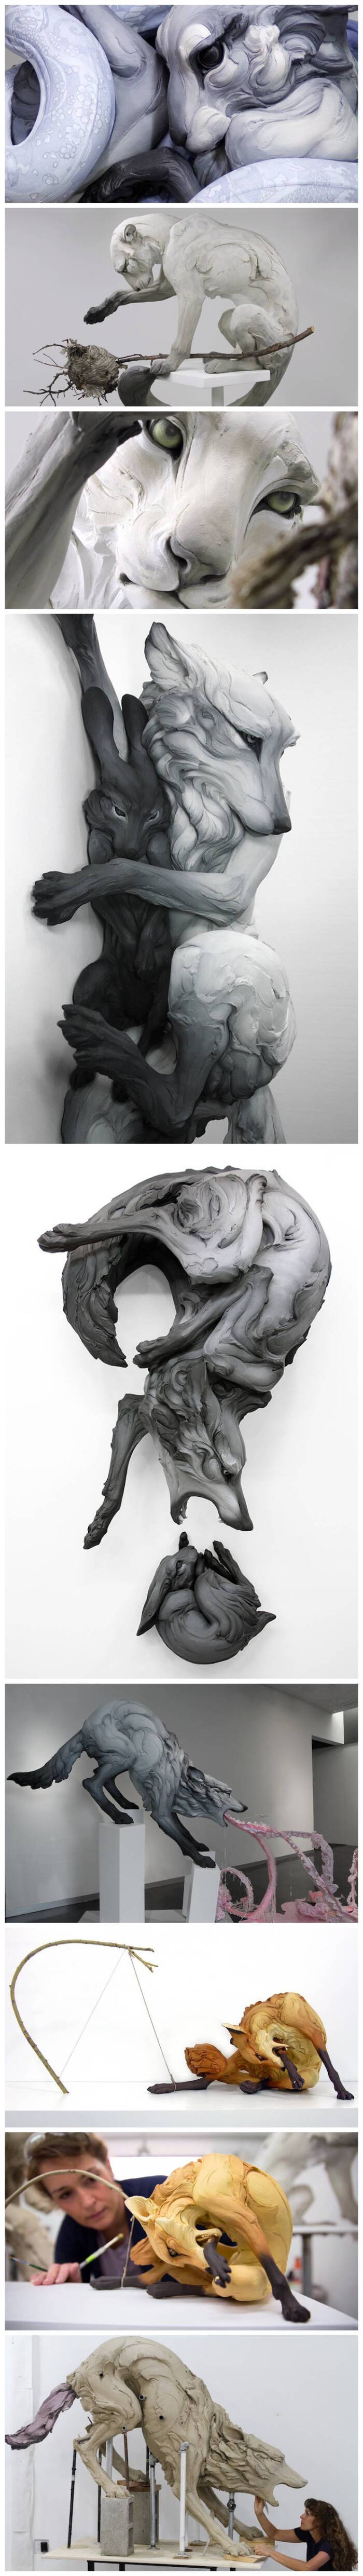 雕塑家 beth cavener stichter 细腻的人类情感铰接与动物形态的雕塑